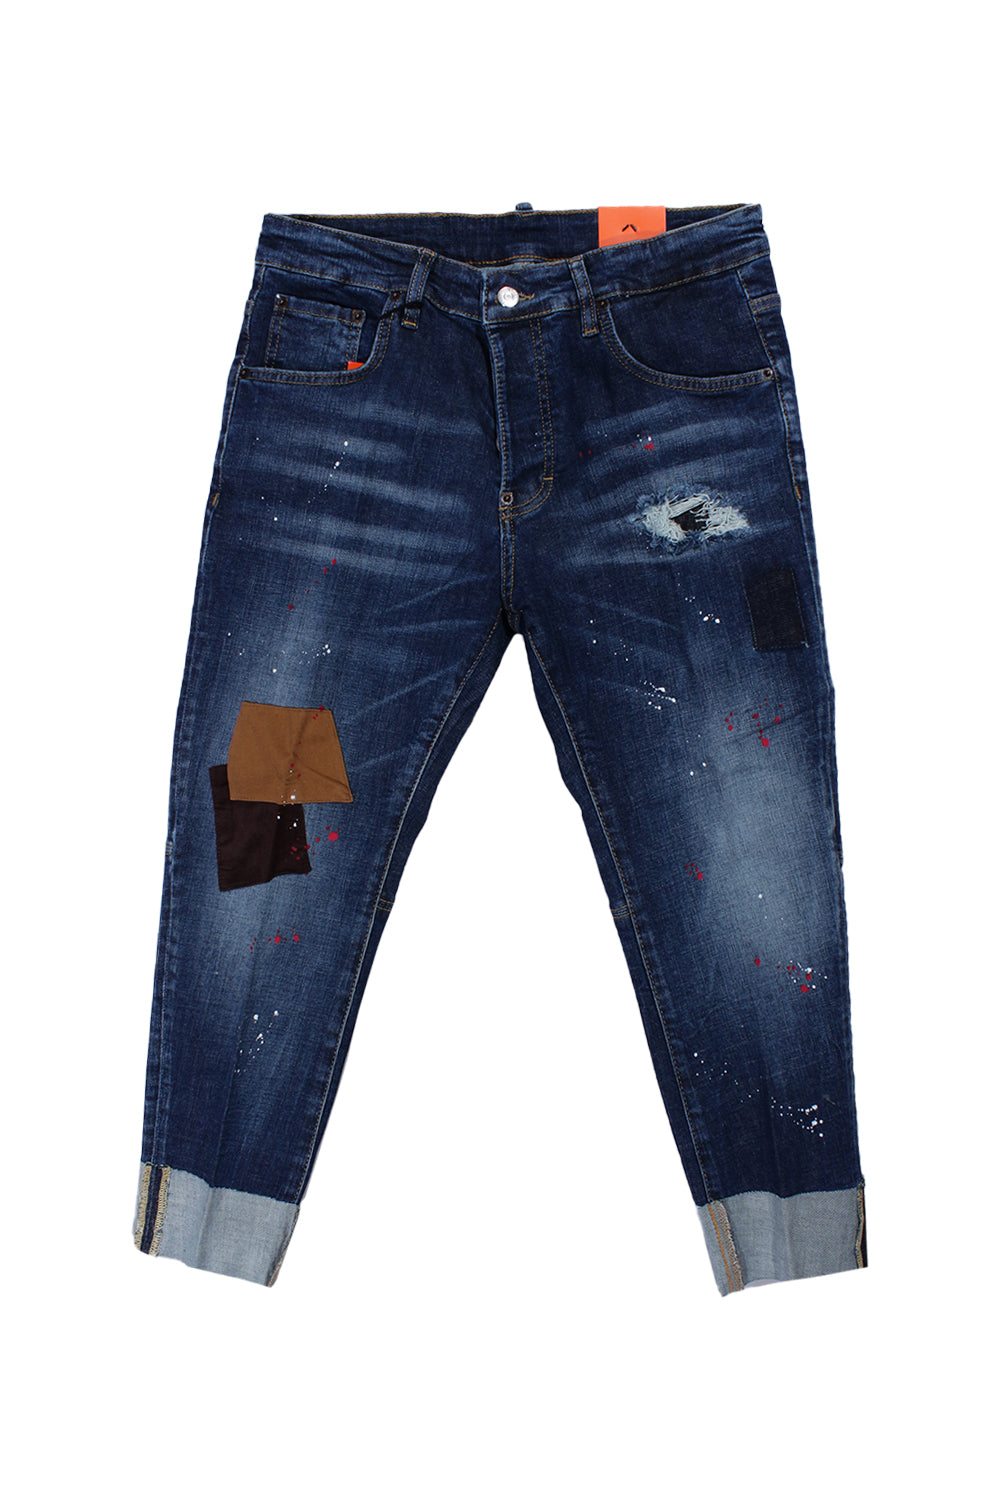 Marcoric Jeans Model E 2299